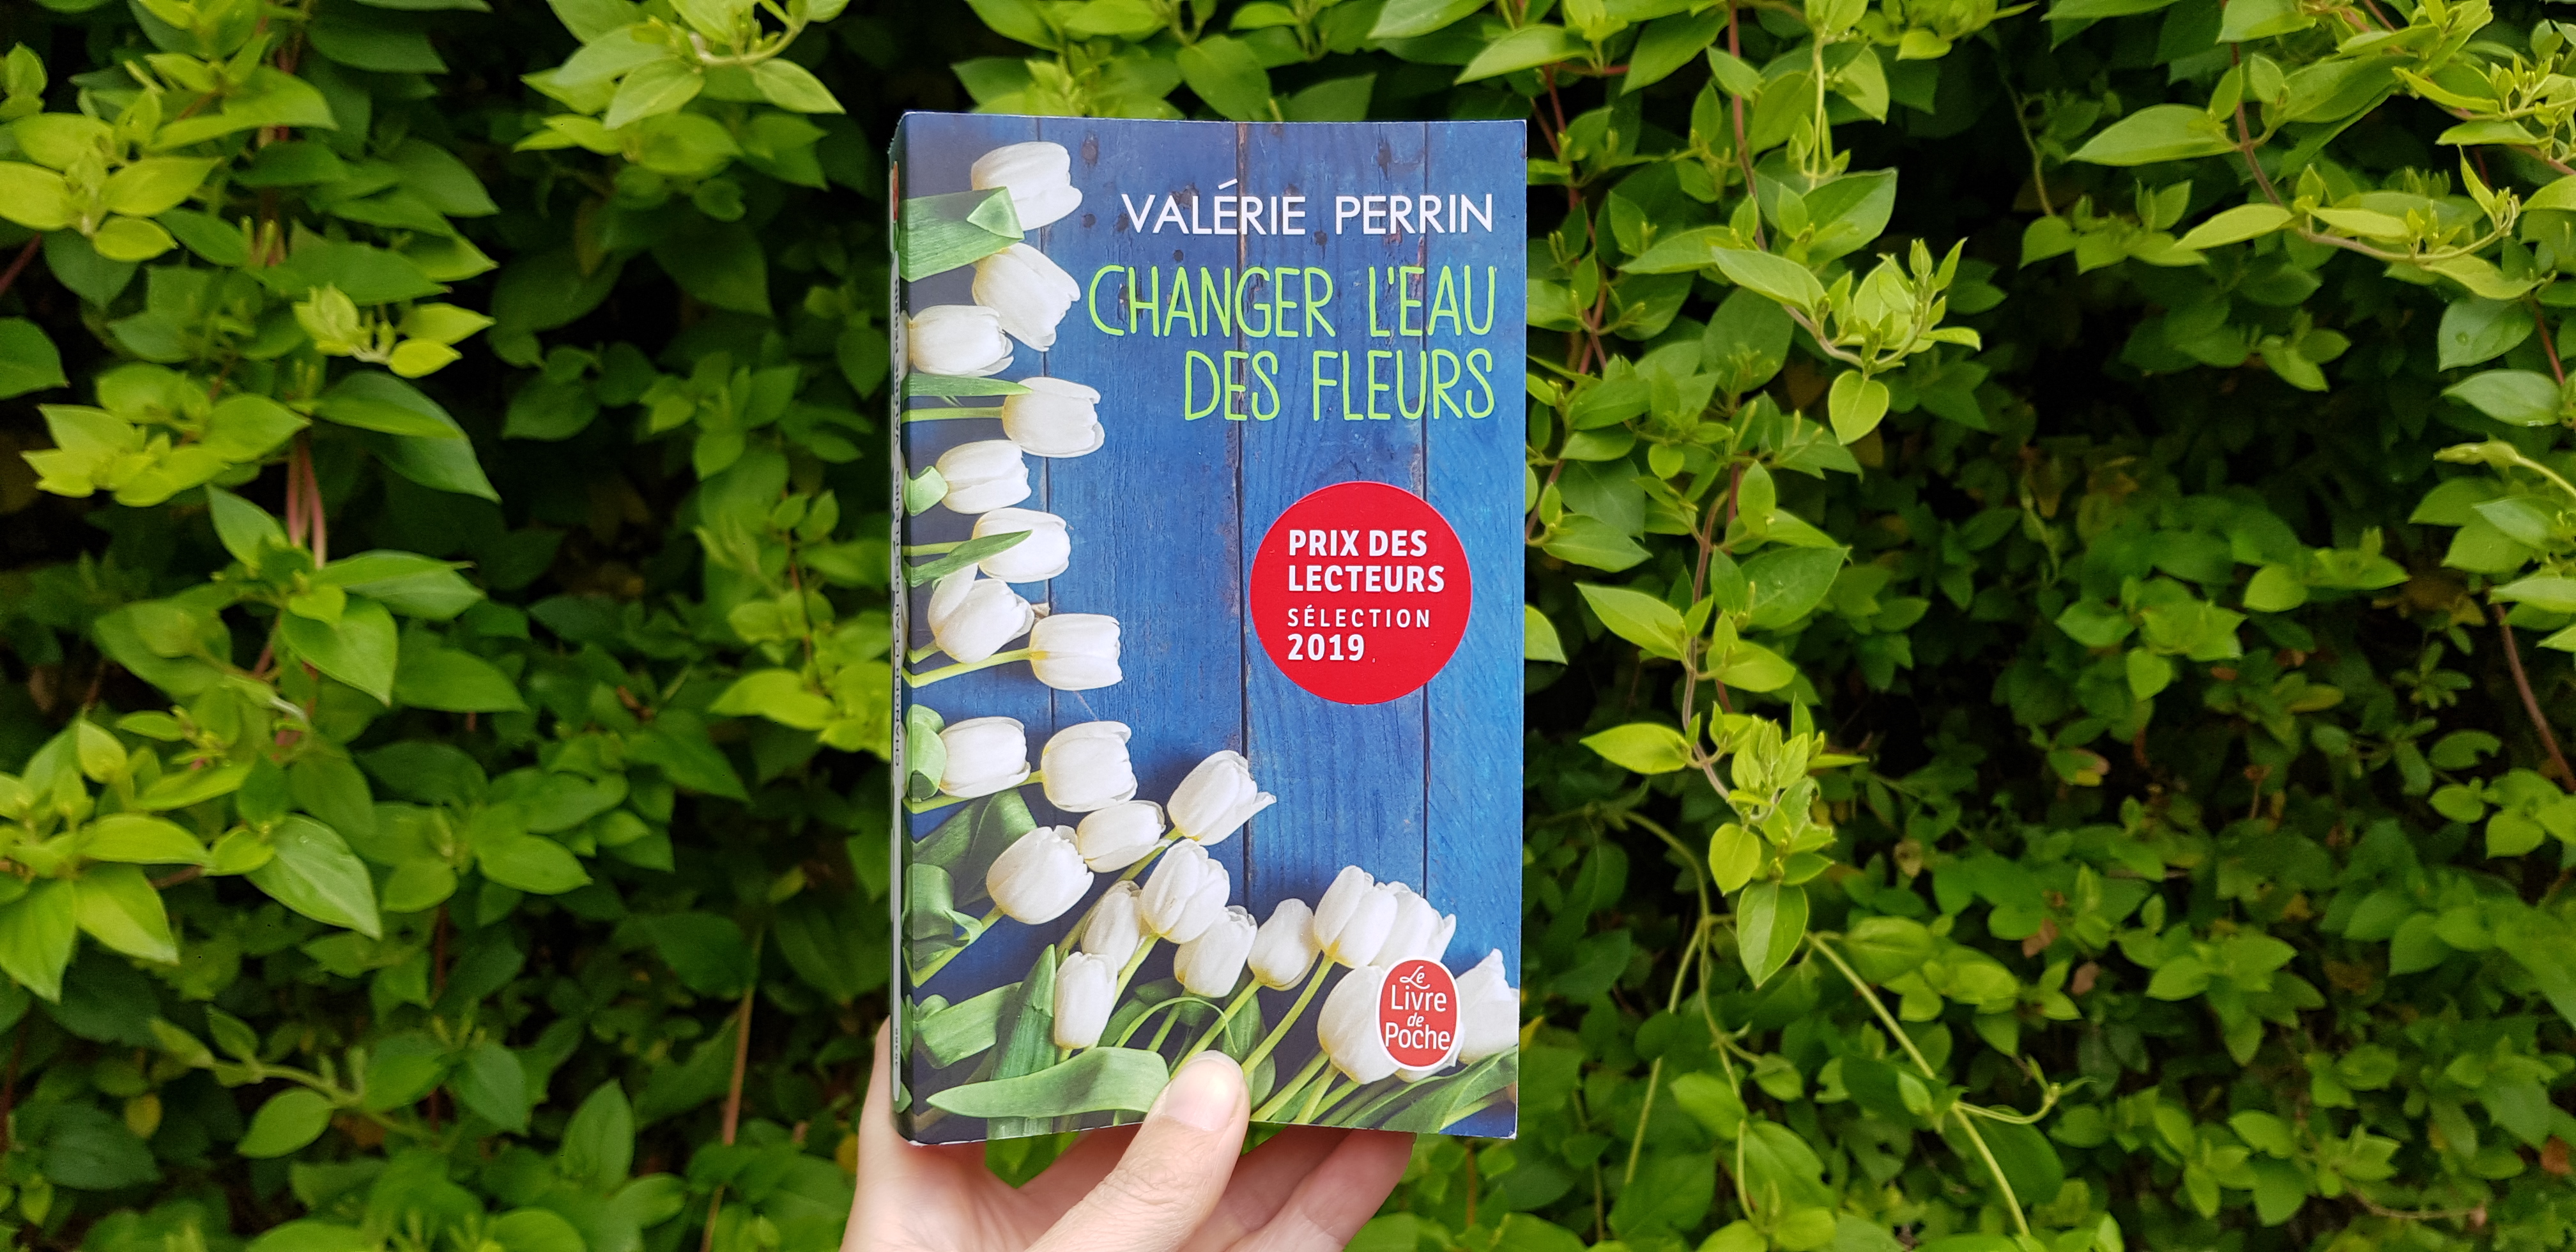 CHANGER L'EAU DES FLEURS / VALÉRIE PERRIN